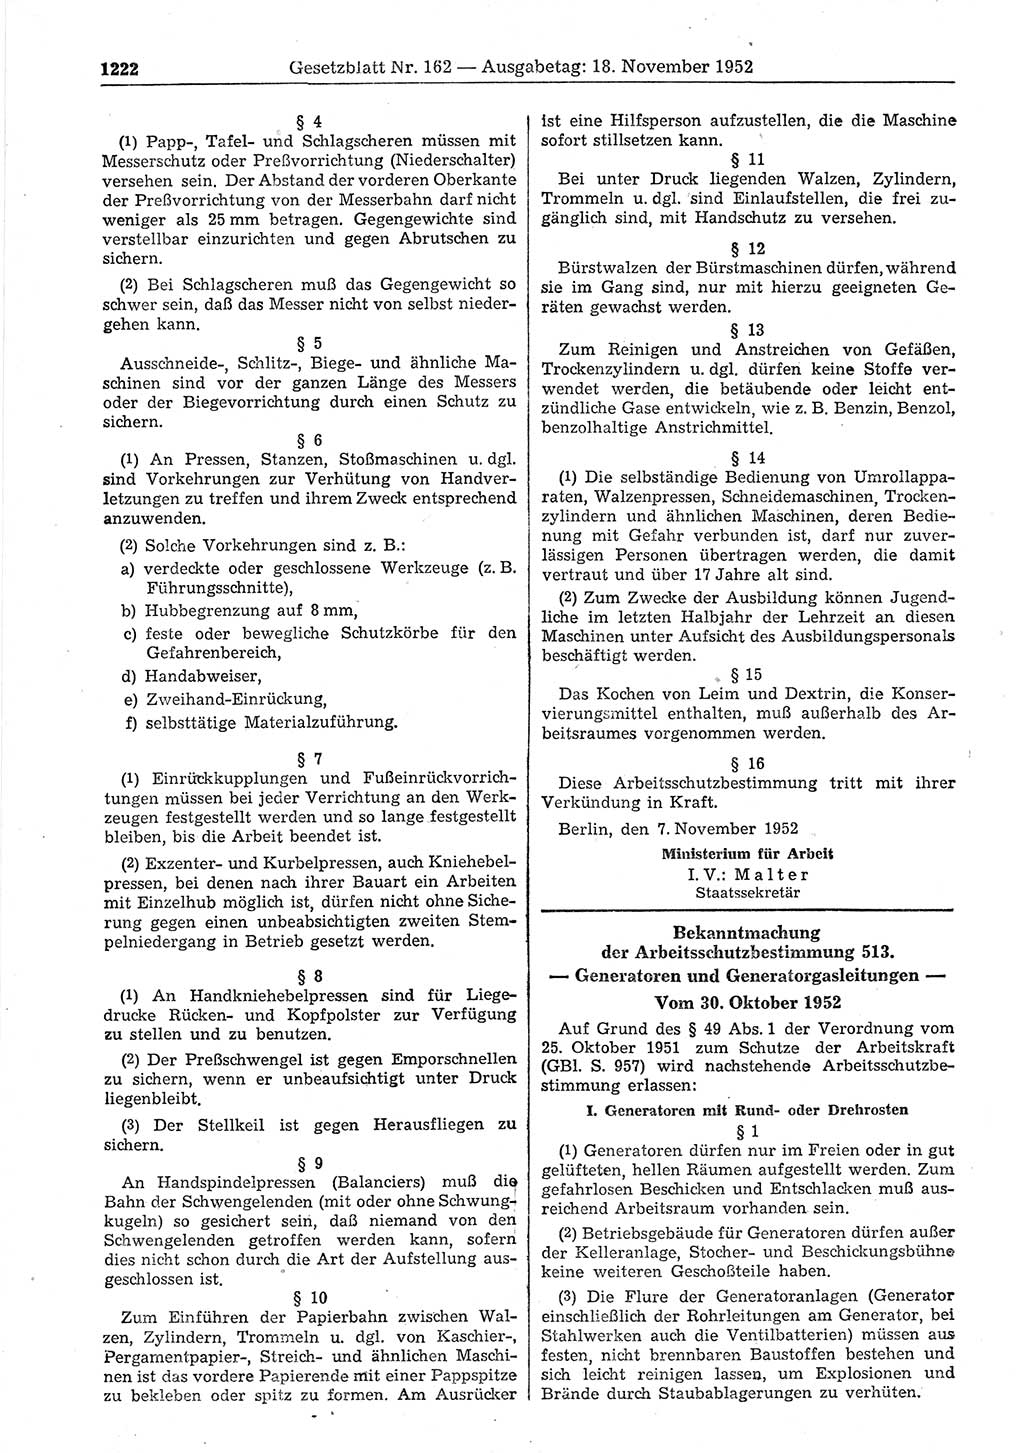 Gesetzblatt (GBl.) der Deutschen Demokratischen Republik (DDR) 1952, Seite 1222 (GBl. DDR 1952, S. 1222)